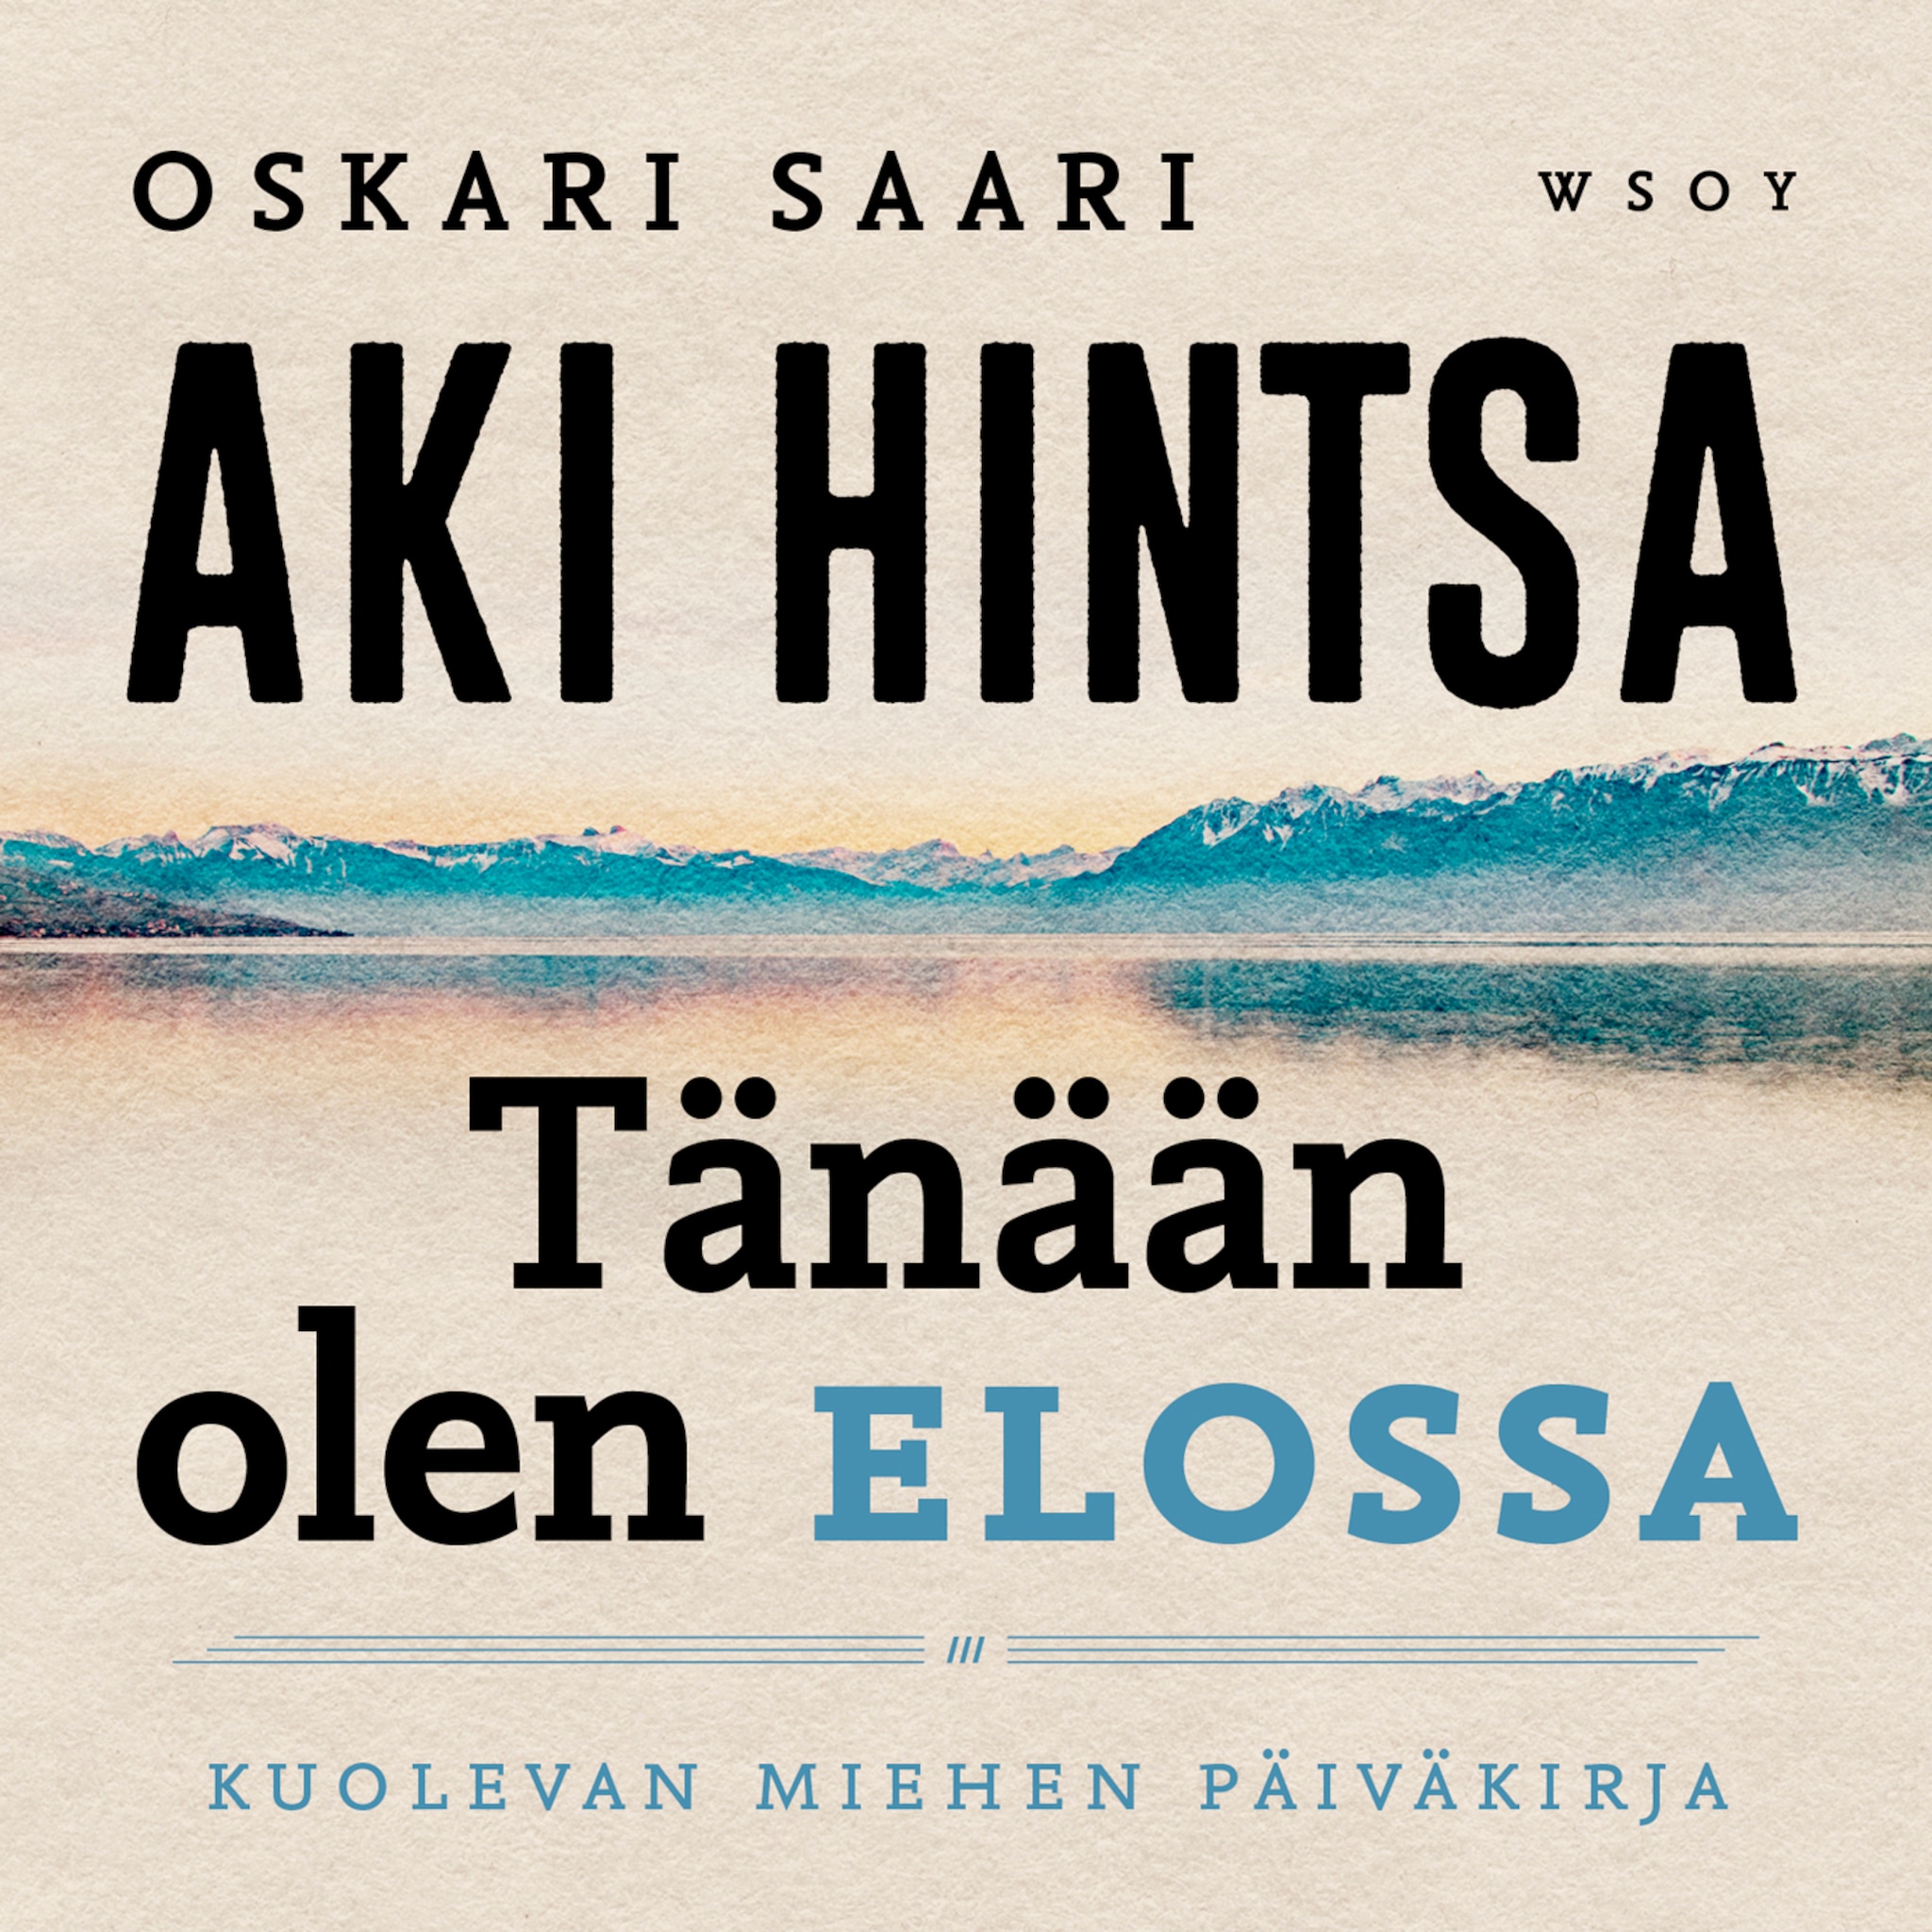 Oskari Saari - Author - BookBeat